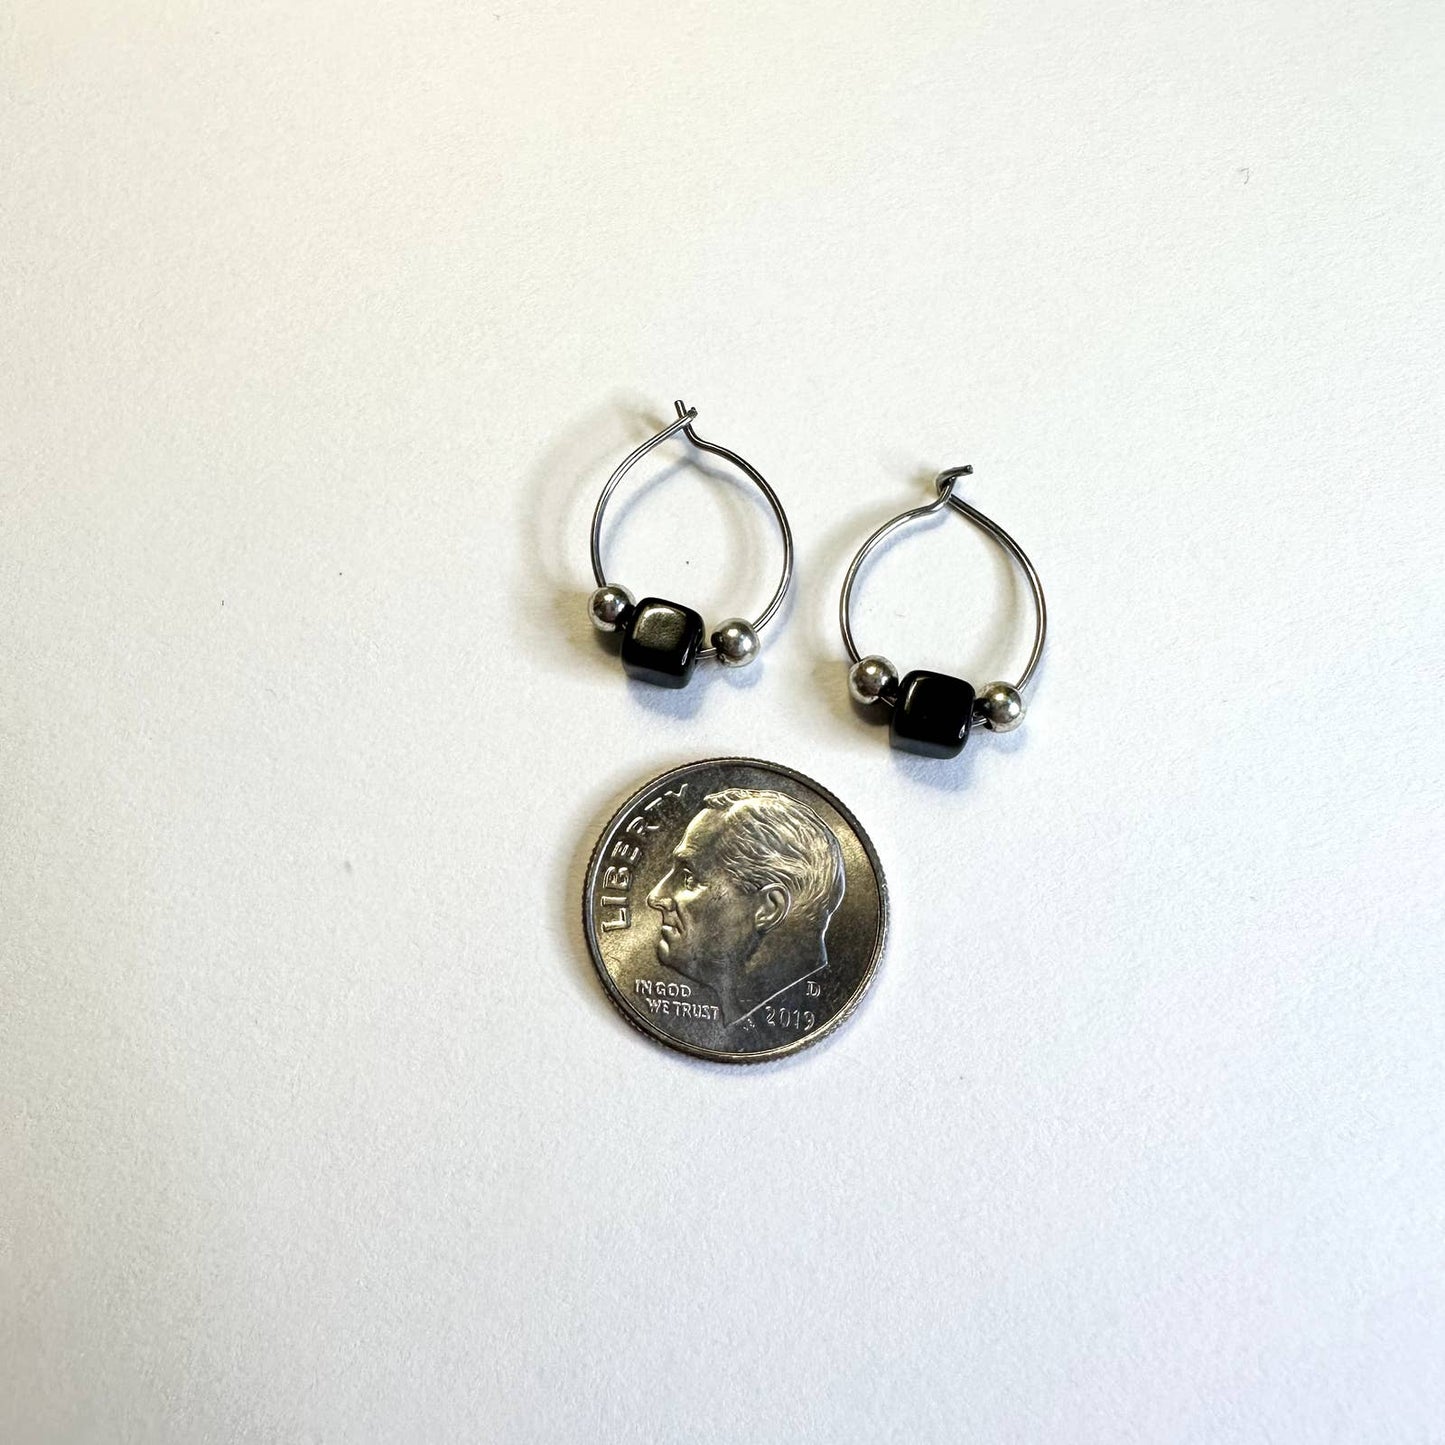 Surgical steel silver black beaded hoop huggie earrings